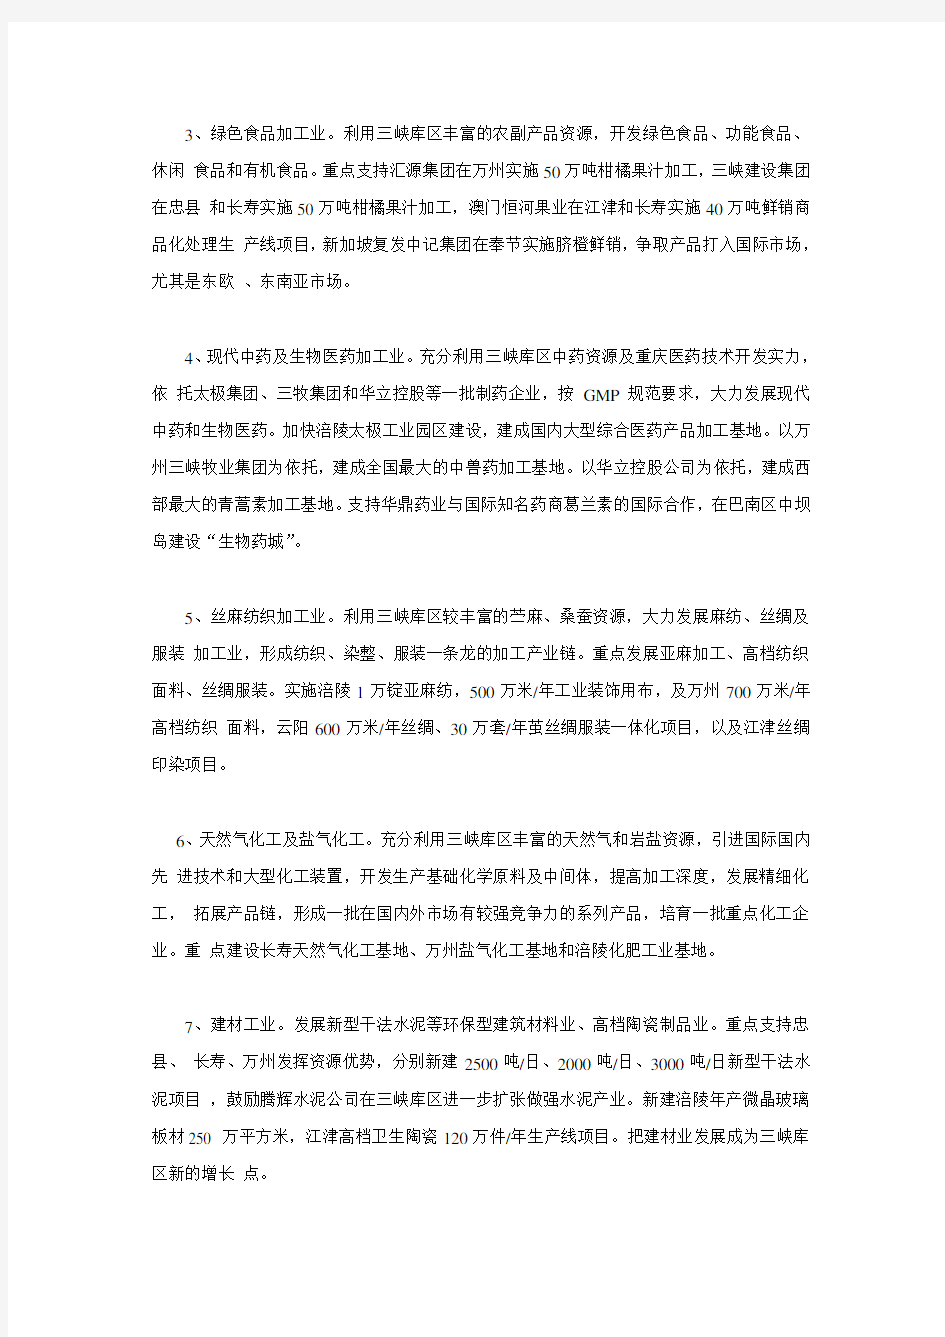 重庆三峡库区产业发展重点及布局